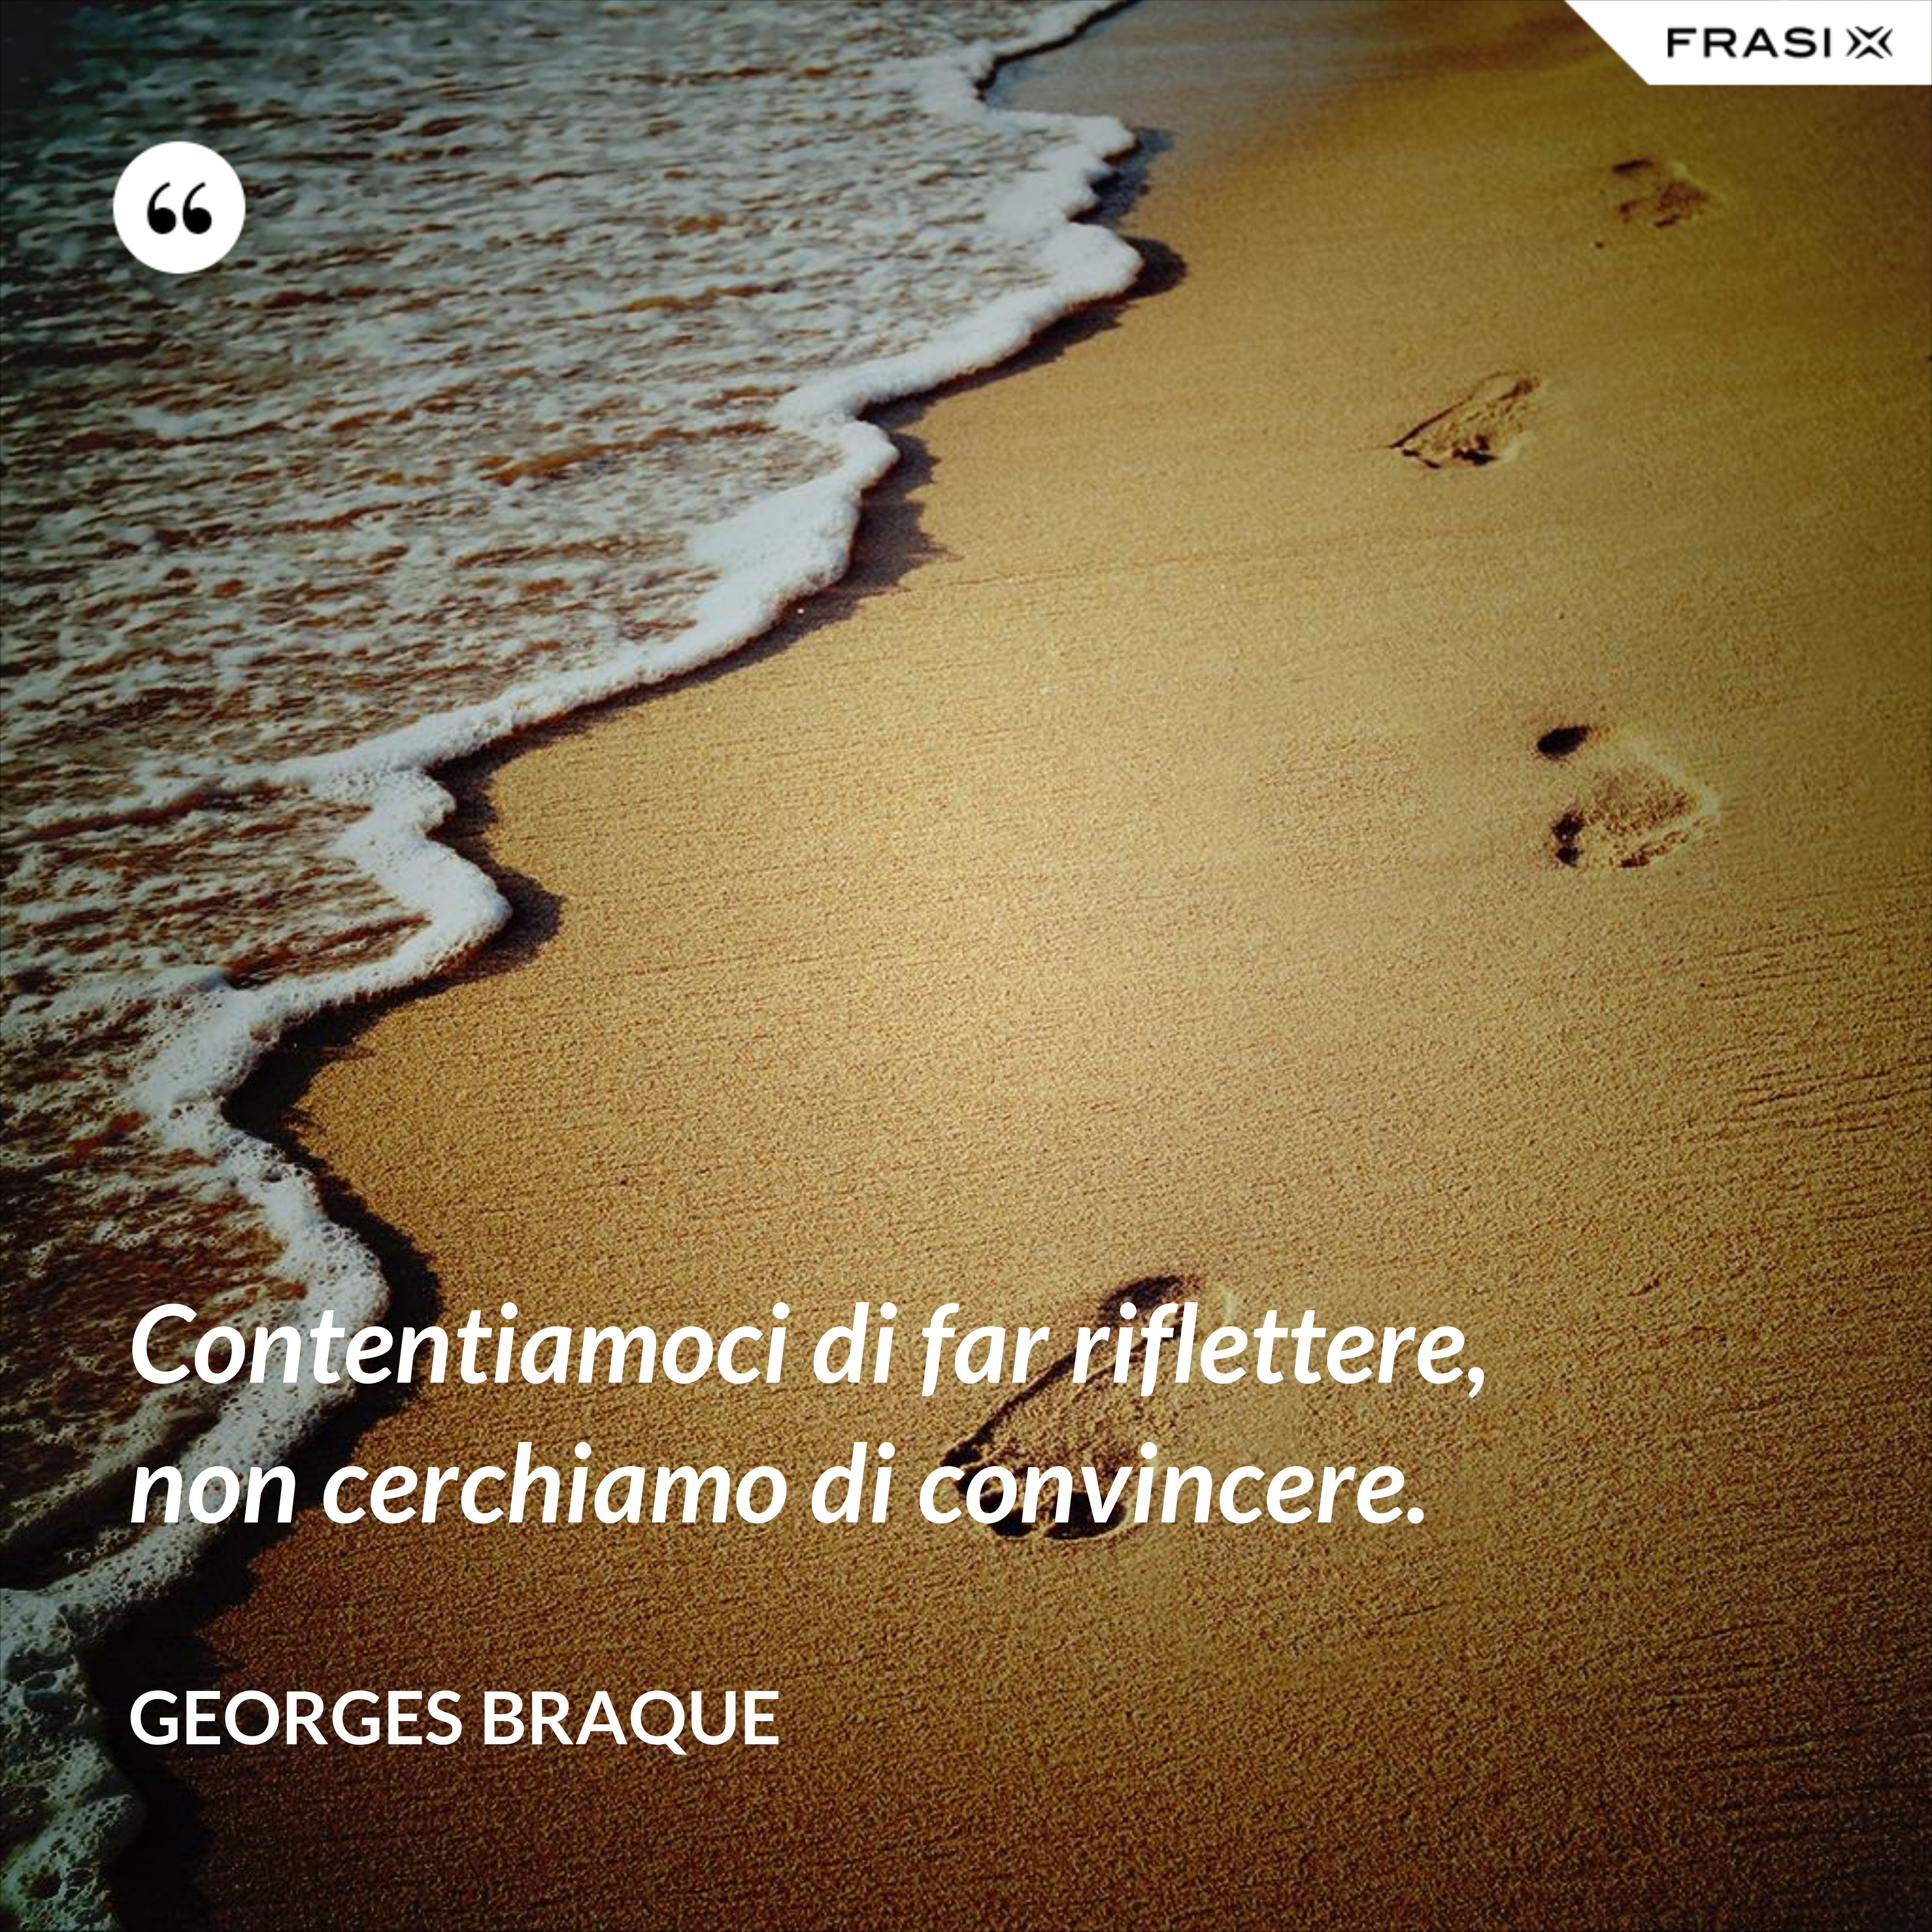 Contentiamoci di far riflettere, non cerchiamo di convincere. - Georges Braque